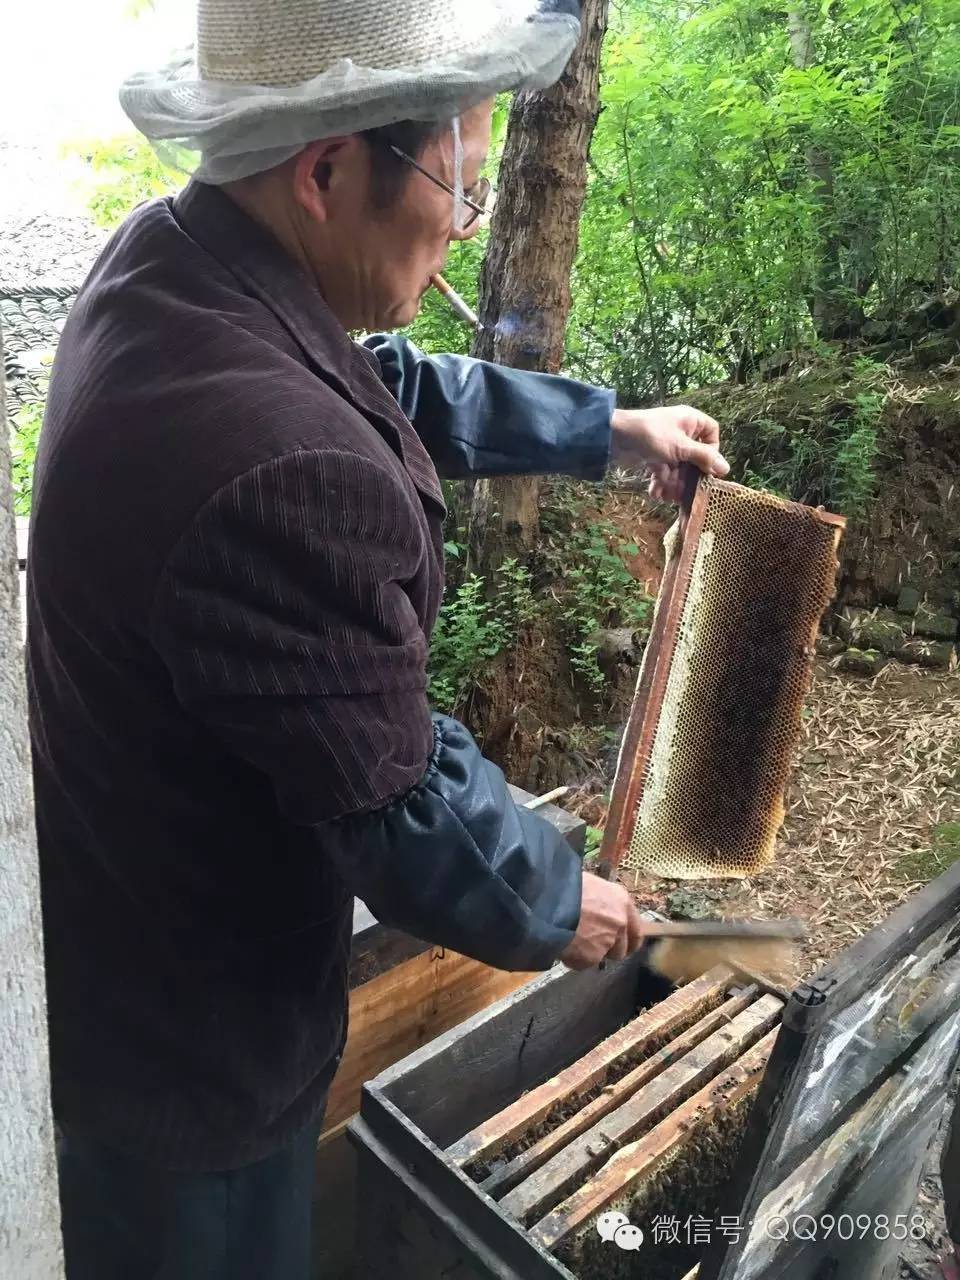 喝蜂蜜水会胖吗 蜂蜜 农家蜂蜜 枇杷蜂蜜价格 三七粉蜂蜜面膜